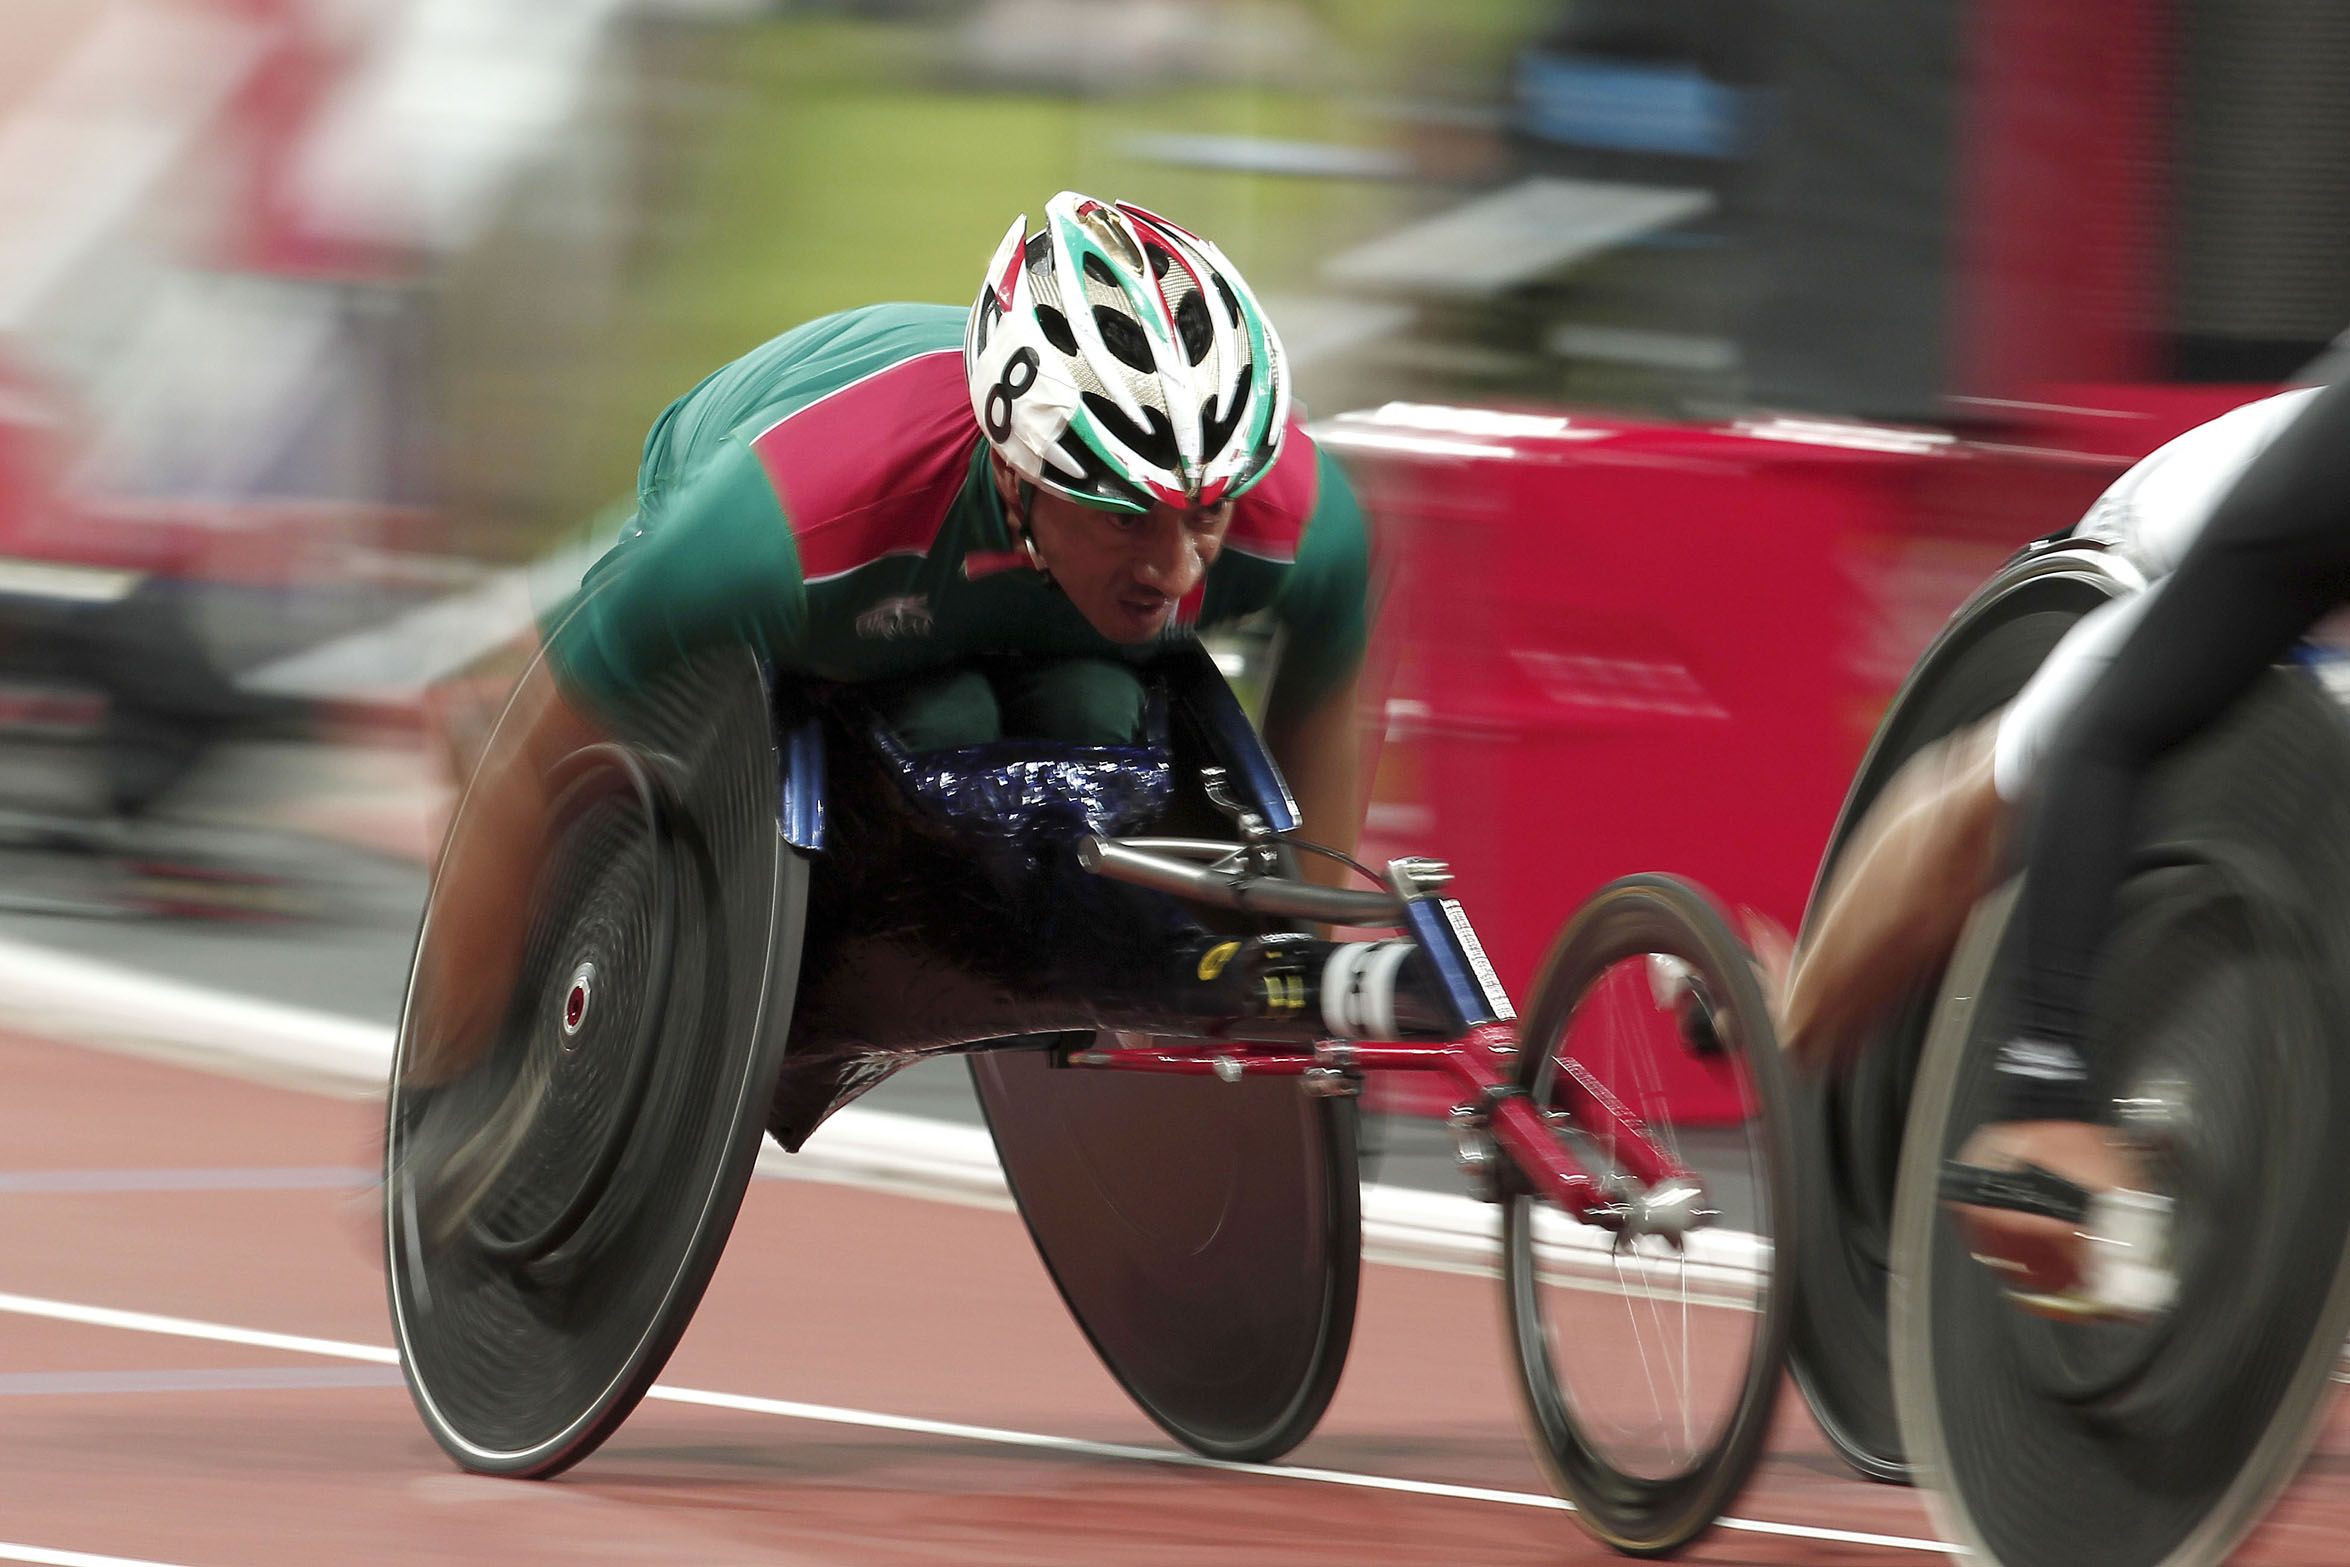  Atletismo, el deporte que daría más medallas a mexicanos en Paralímpicos